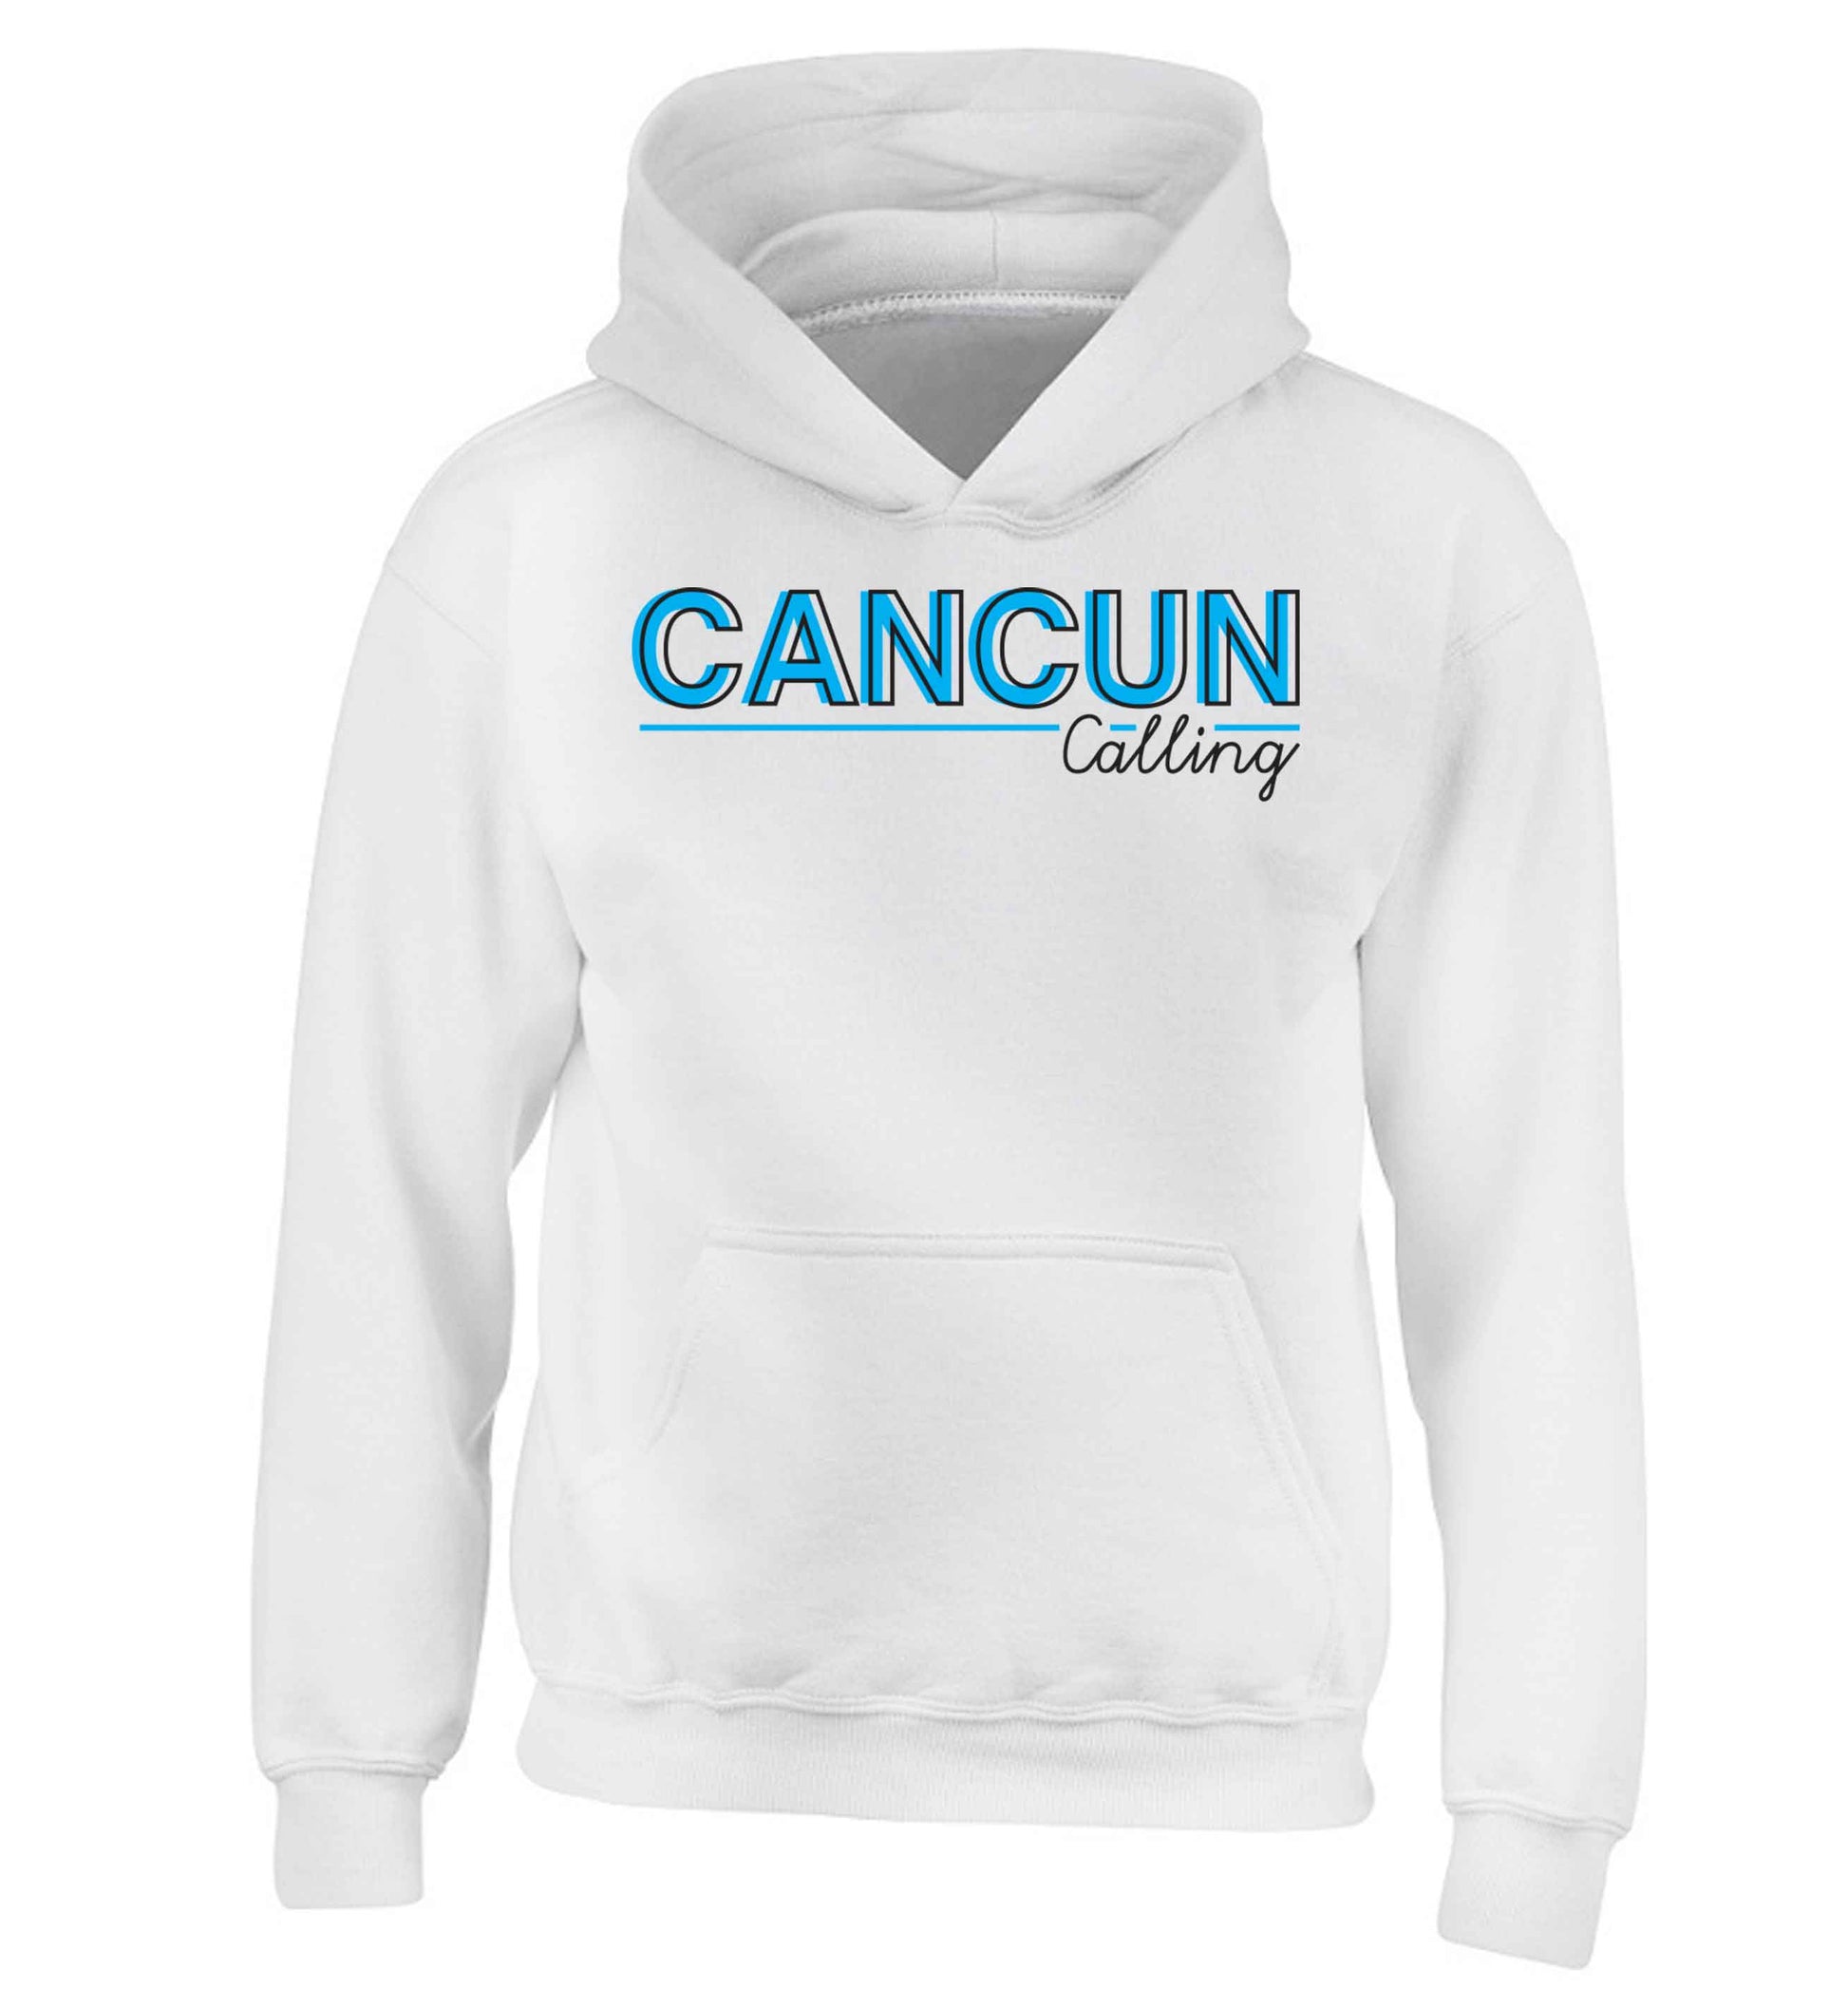 Cancun calling children's white hoodie 12-13 Years